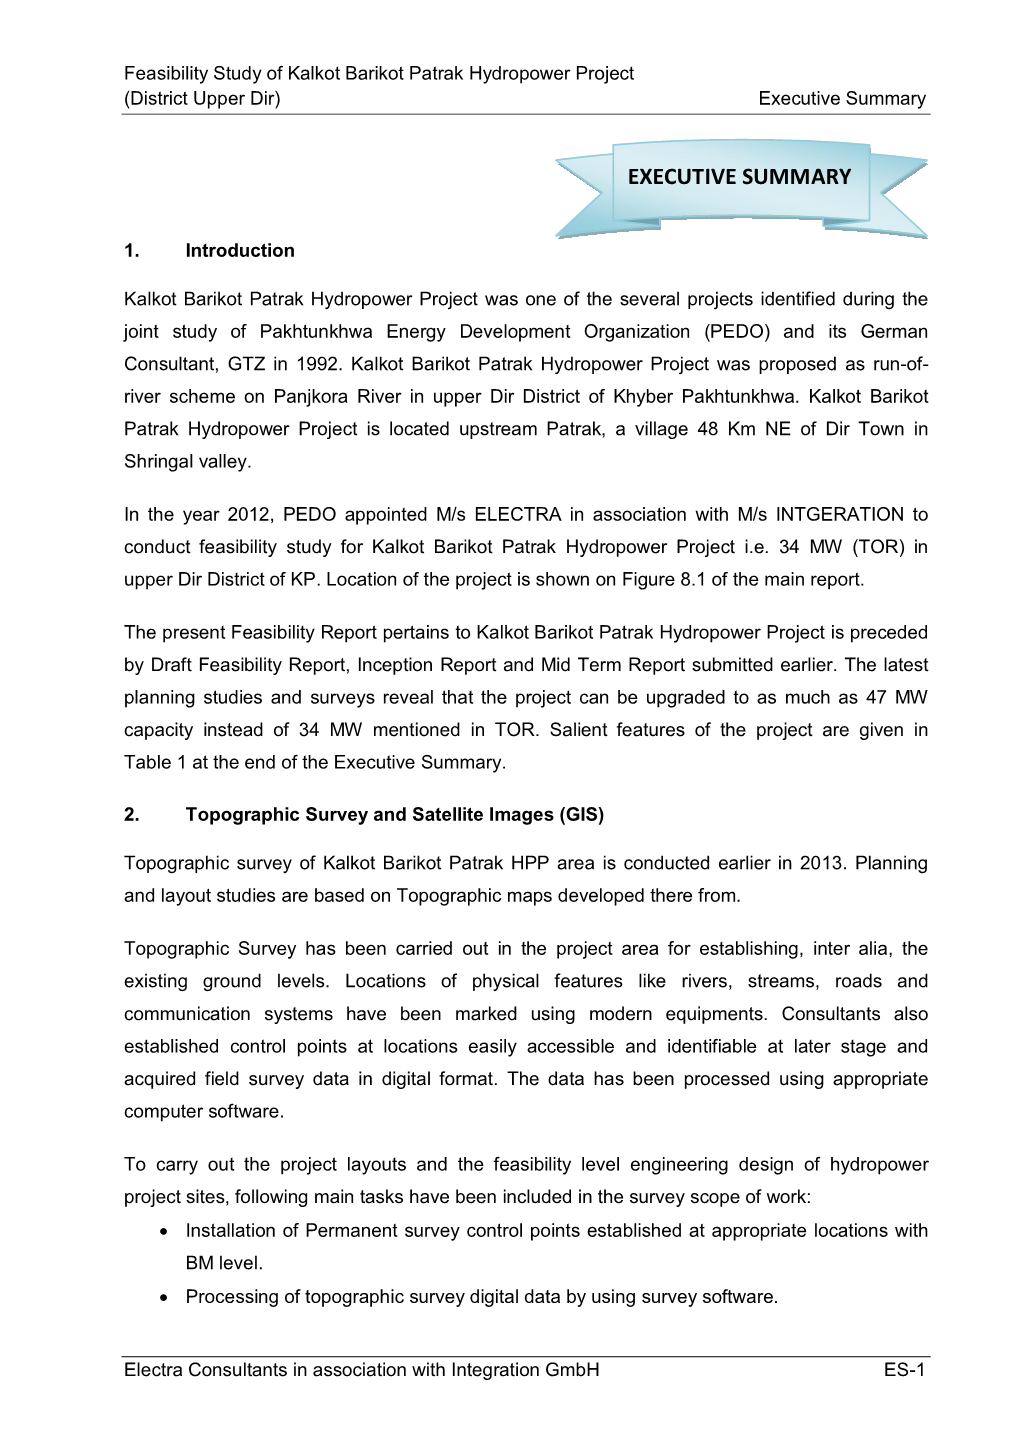 Feasibility Study of Kalkot Barikot Patrak Hydropower Project (District Upper Dir) Executive Summary